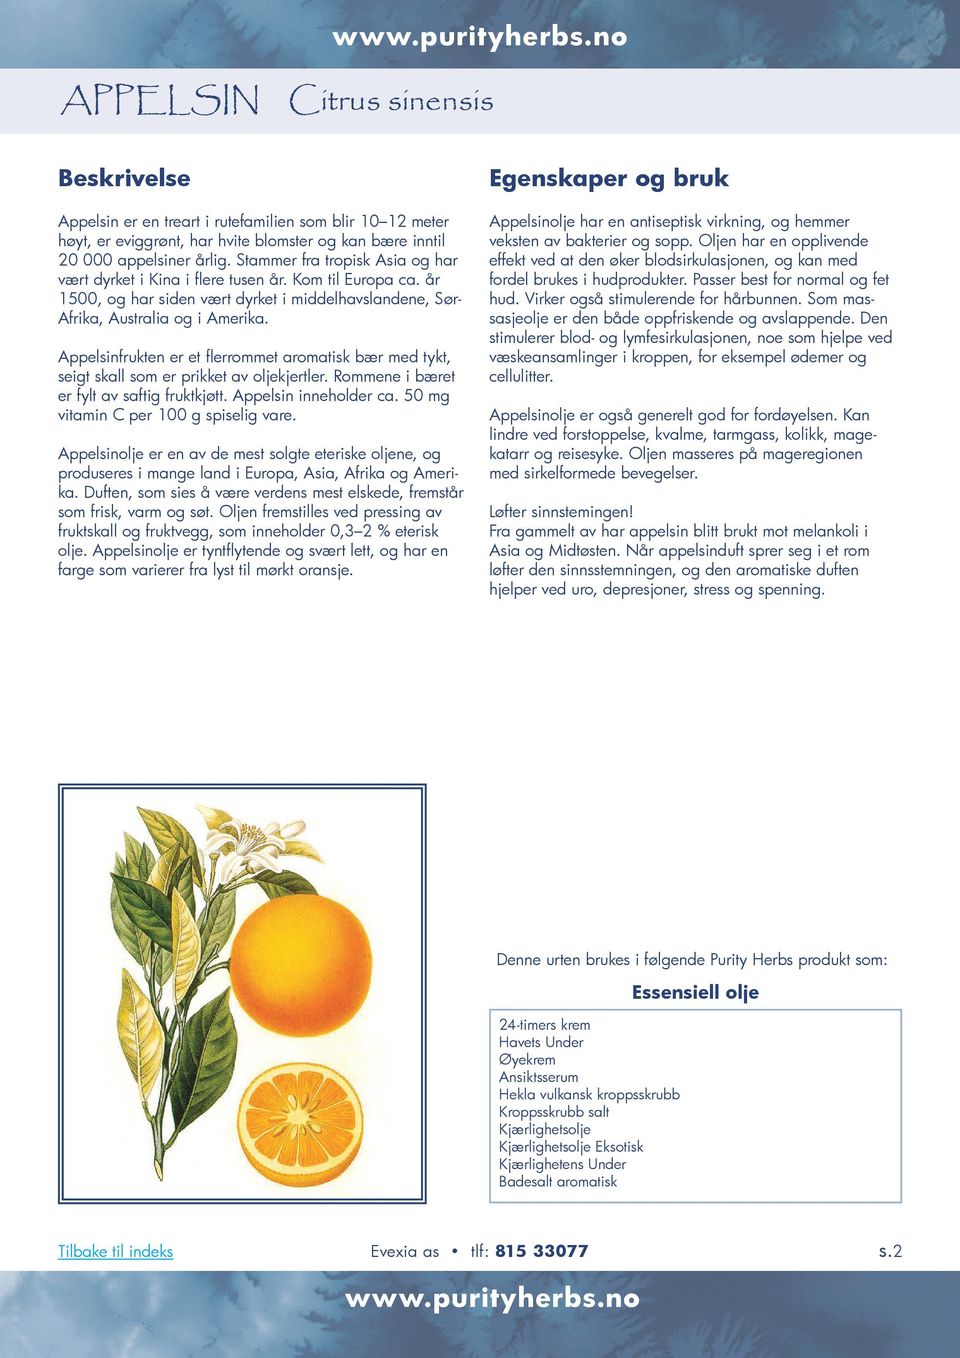 Appelsinfrukten er et flerrommet aromatisk bær med tykt, seigt skall som er prikket av oljekjertler. Rommene i bæret er fylt av saftig fruktkjøtt. Appelsin inneholder ca.